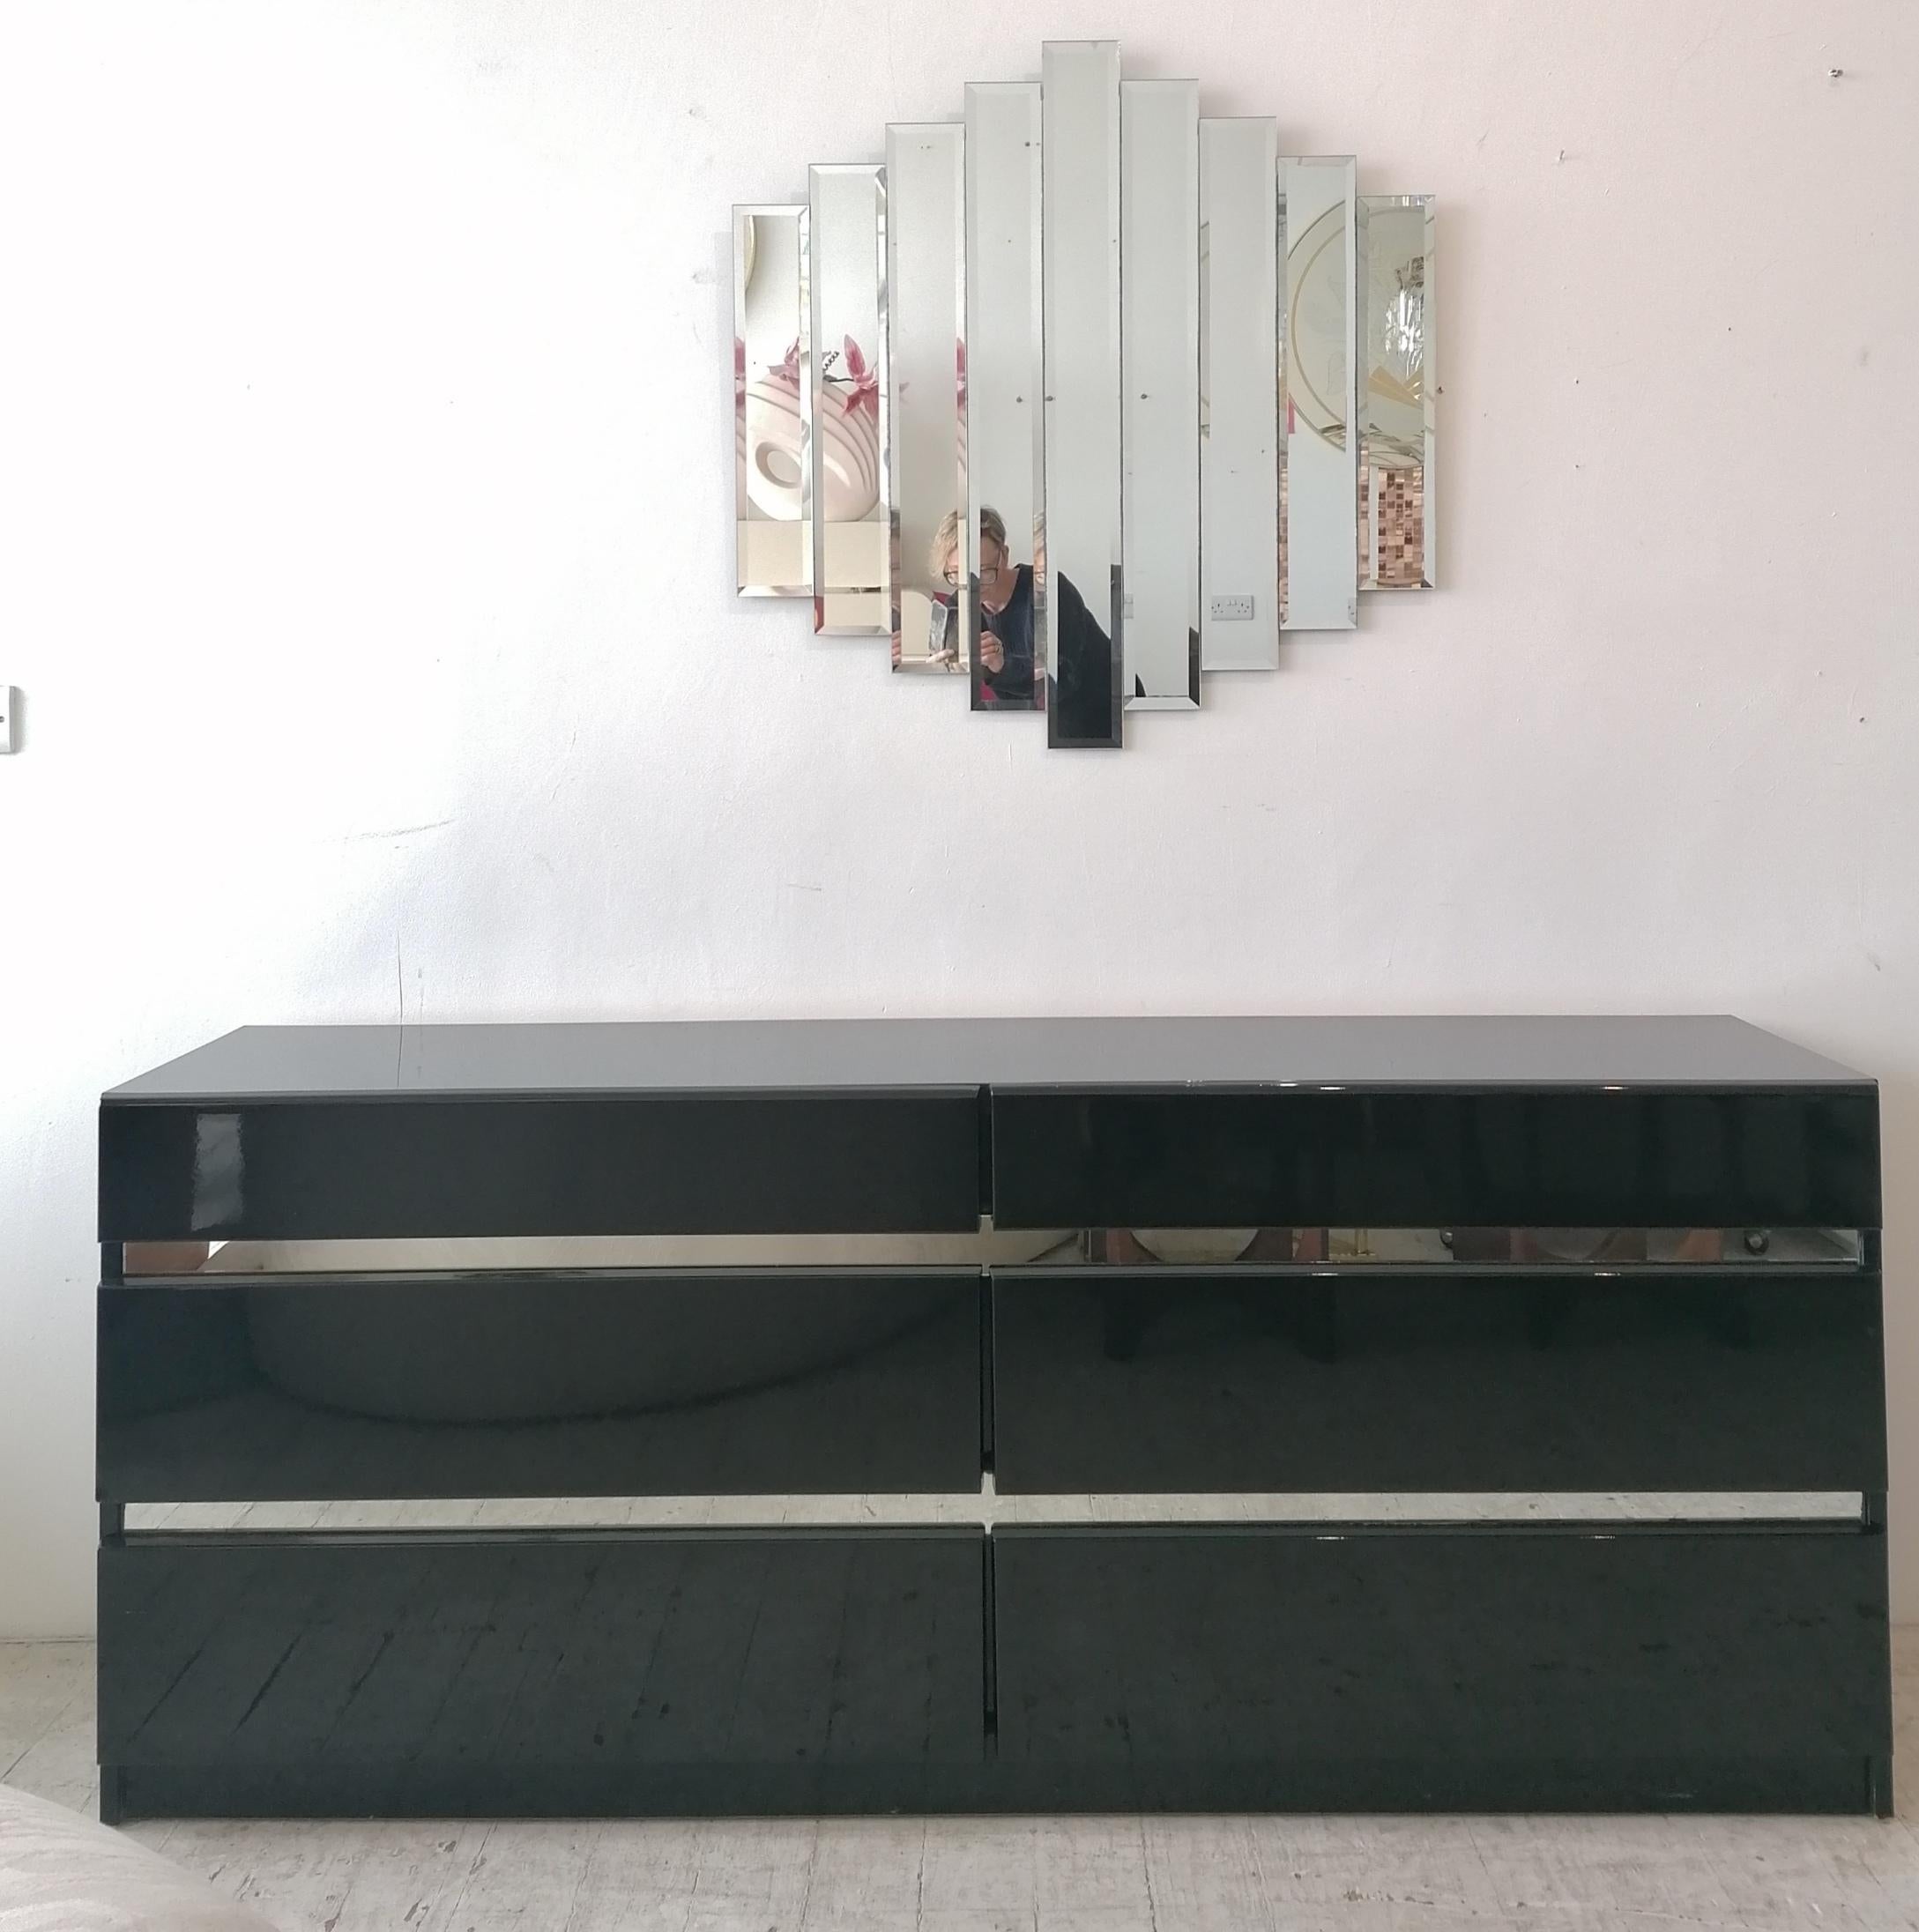 Schwarzes Lack-Sideboard mit Schubladen / Kommode von Millennium, USA, aus den 1980er Jahren im Art-Deco-Stil. Sieht aus wie eine Chromeinfassung, ist aber in Wirklichkeit Spiegelglas. In großen Vintage-Zustand, dh sehr geringe Schrammen und